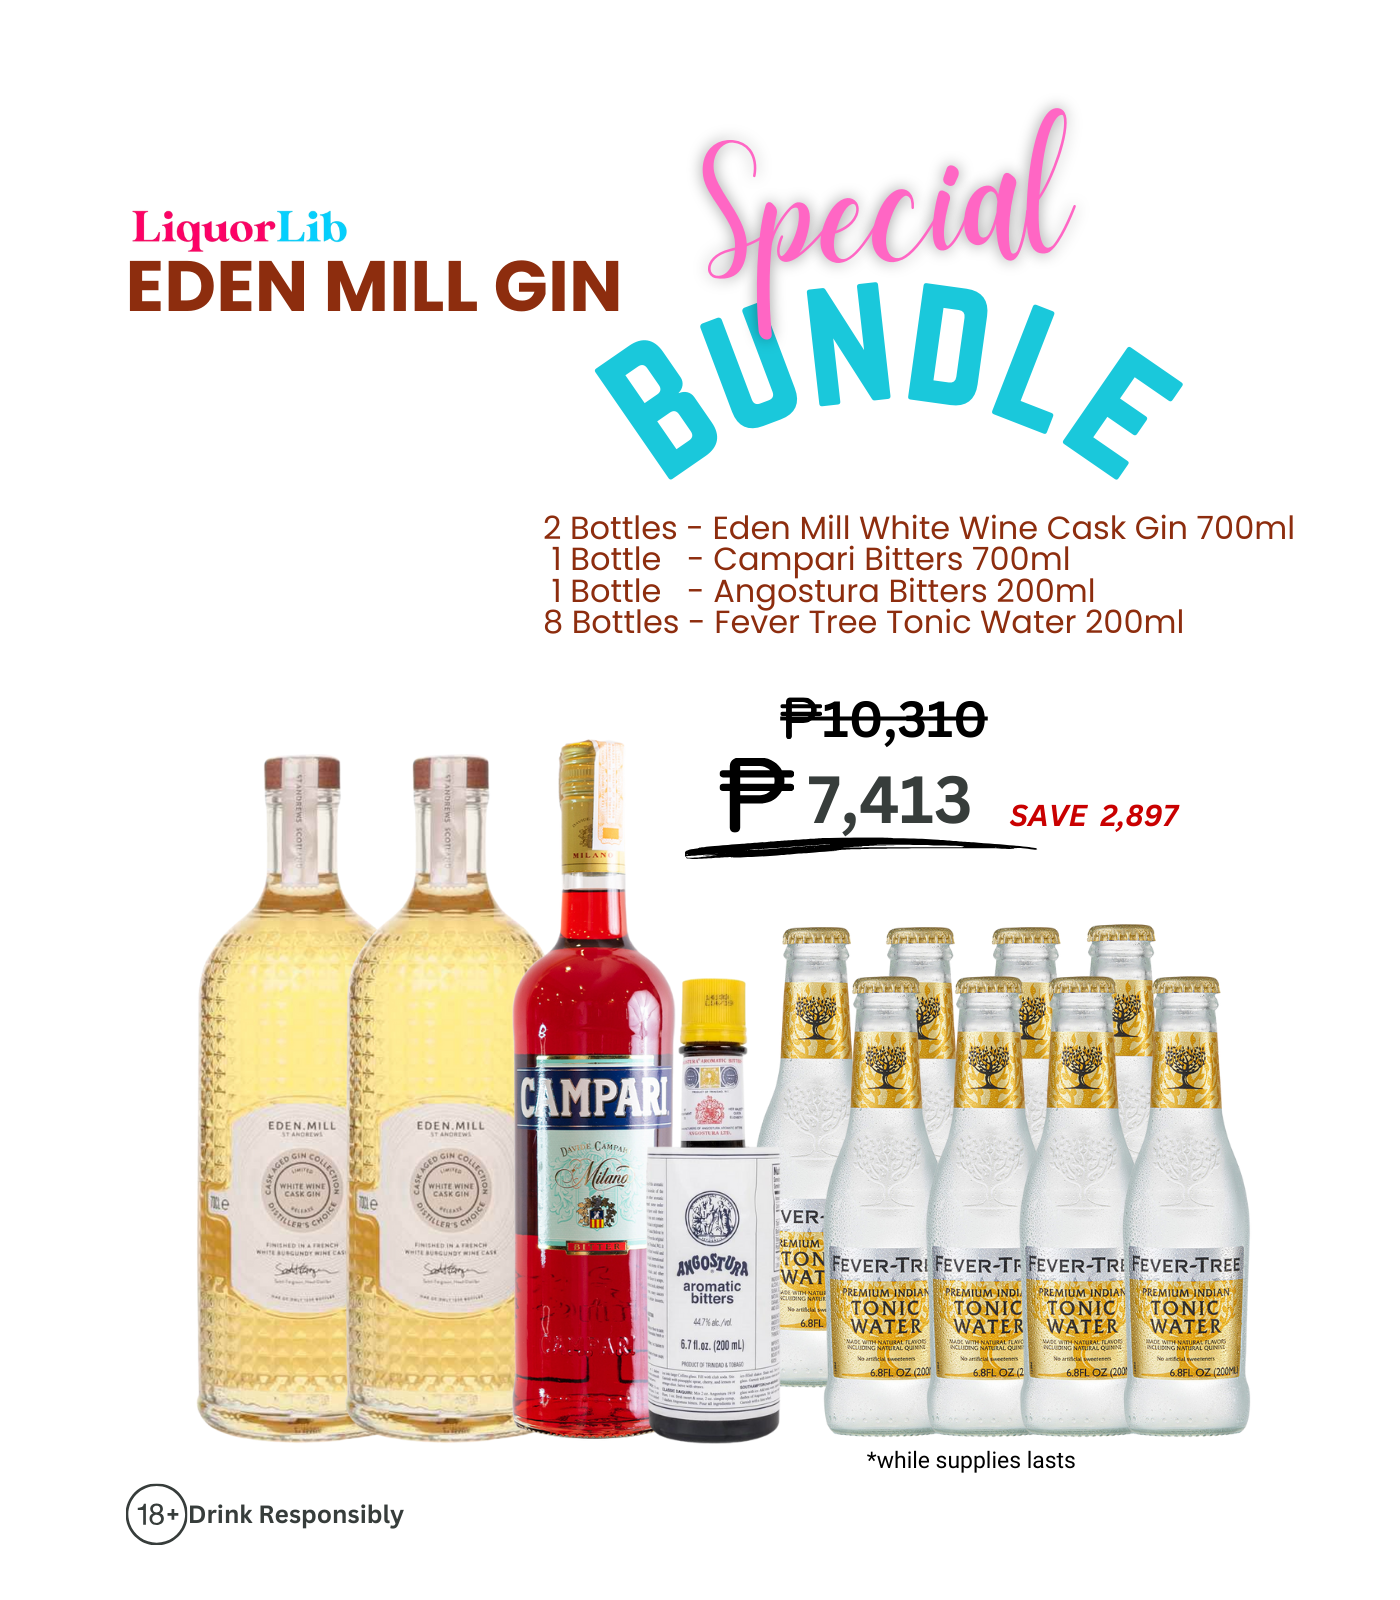 Eden Mill Scottish Gin Bundle 8